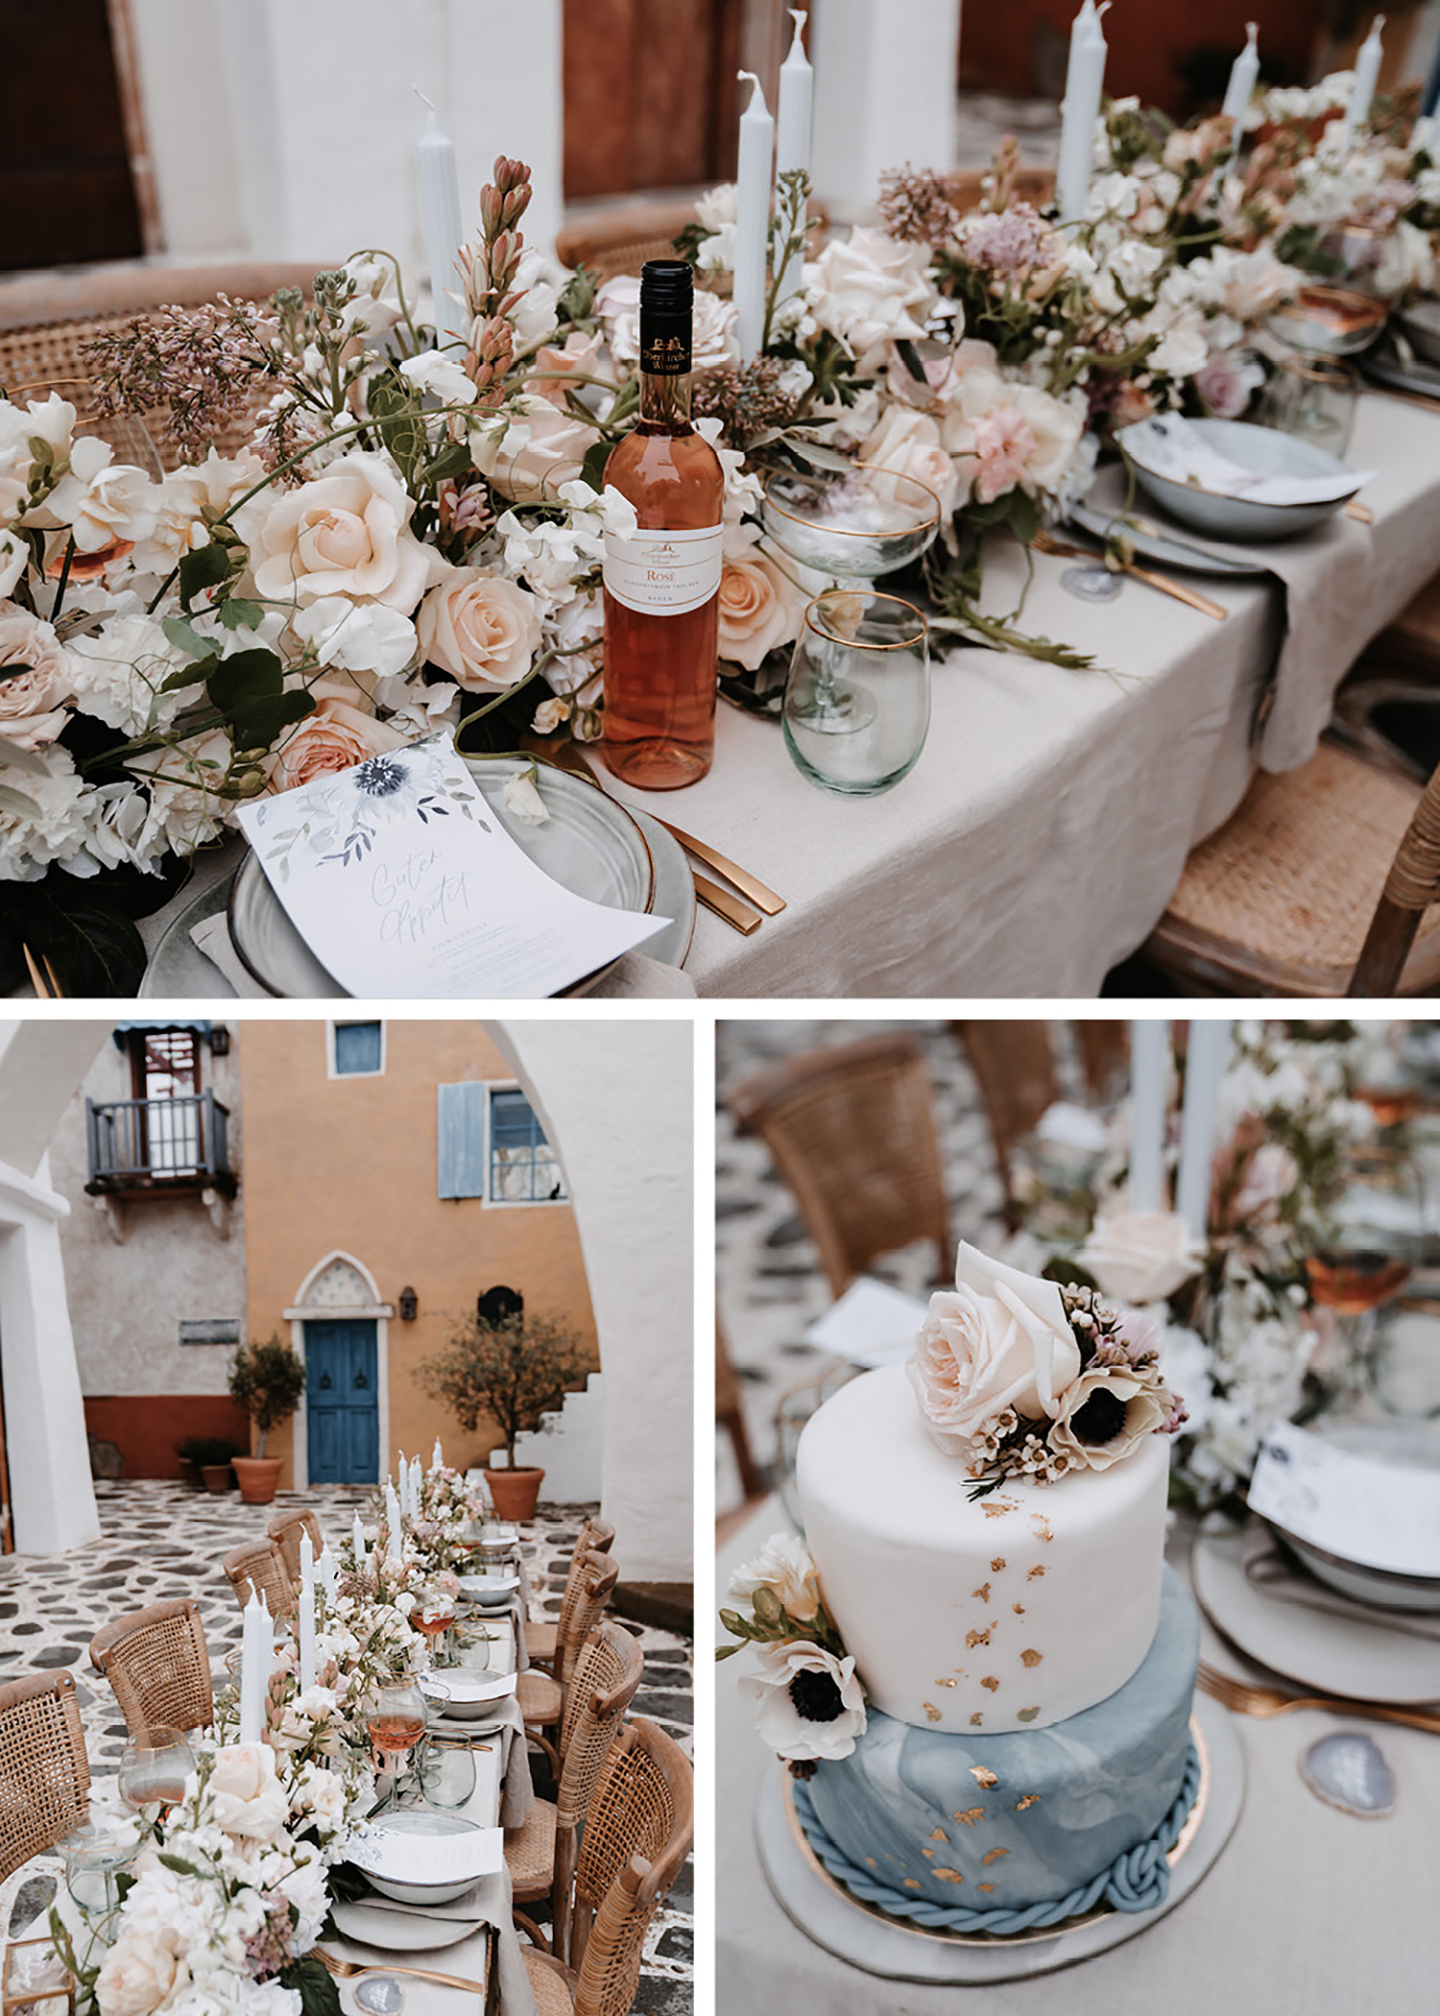 Der gedeckte Hochzeitstisch mit angerichteten Plätzen aus hellblauen Keramiktellern und Besteck in Rosegold wurde mit einem meer aus Blumen verschiedenster Art geschmückt und passt perfekt zur mediterranen Hochzeit.. 